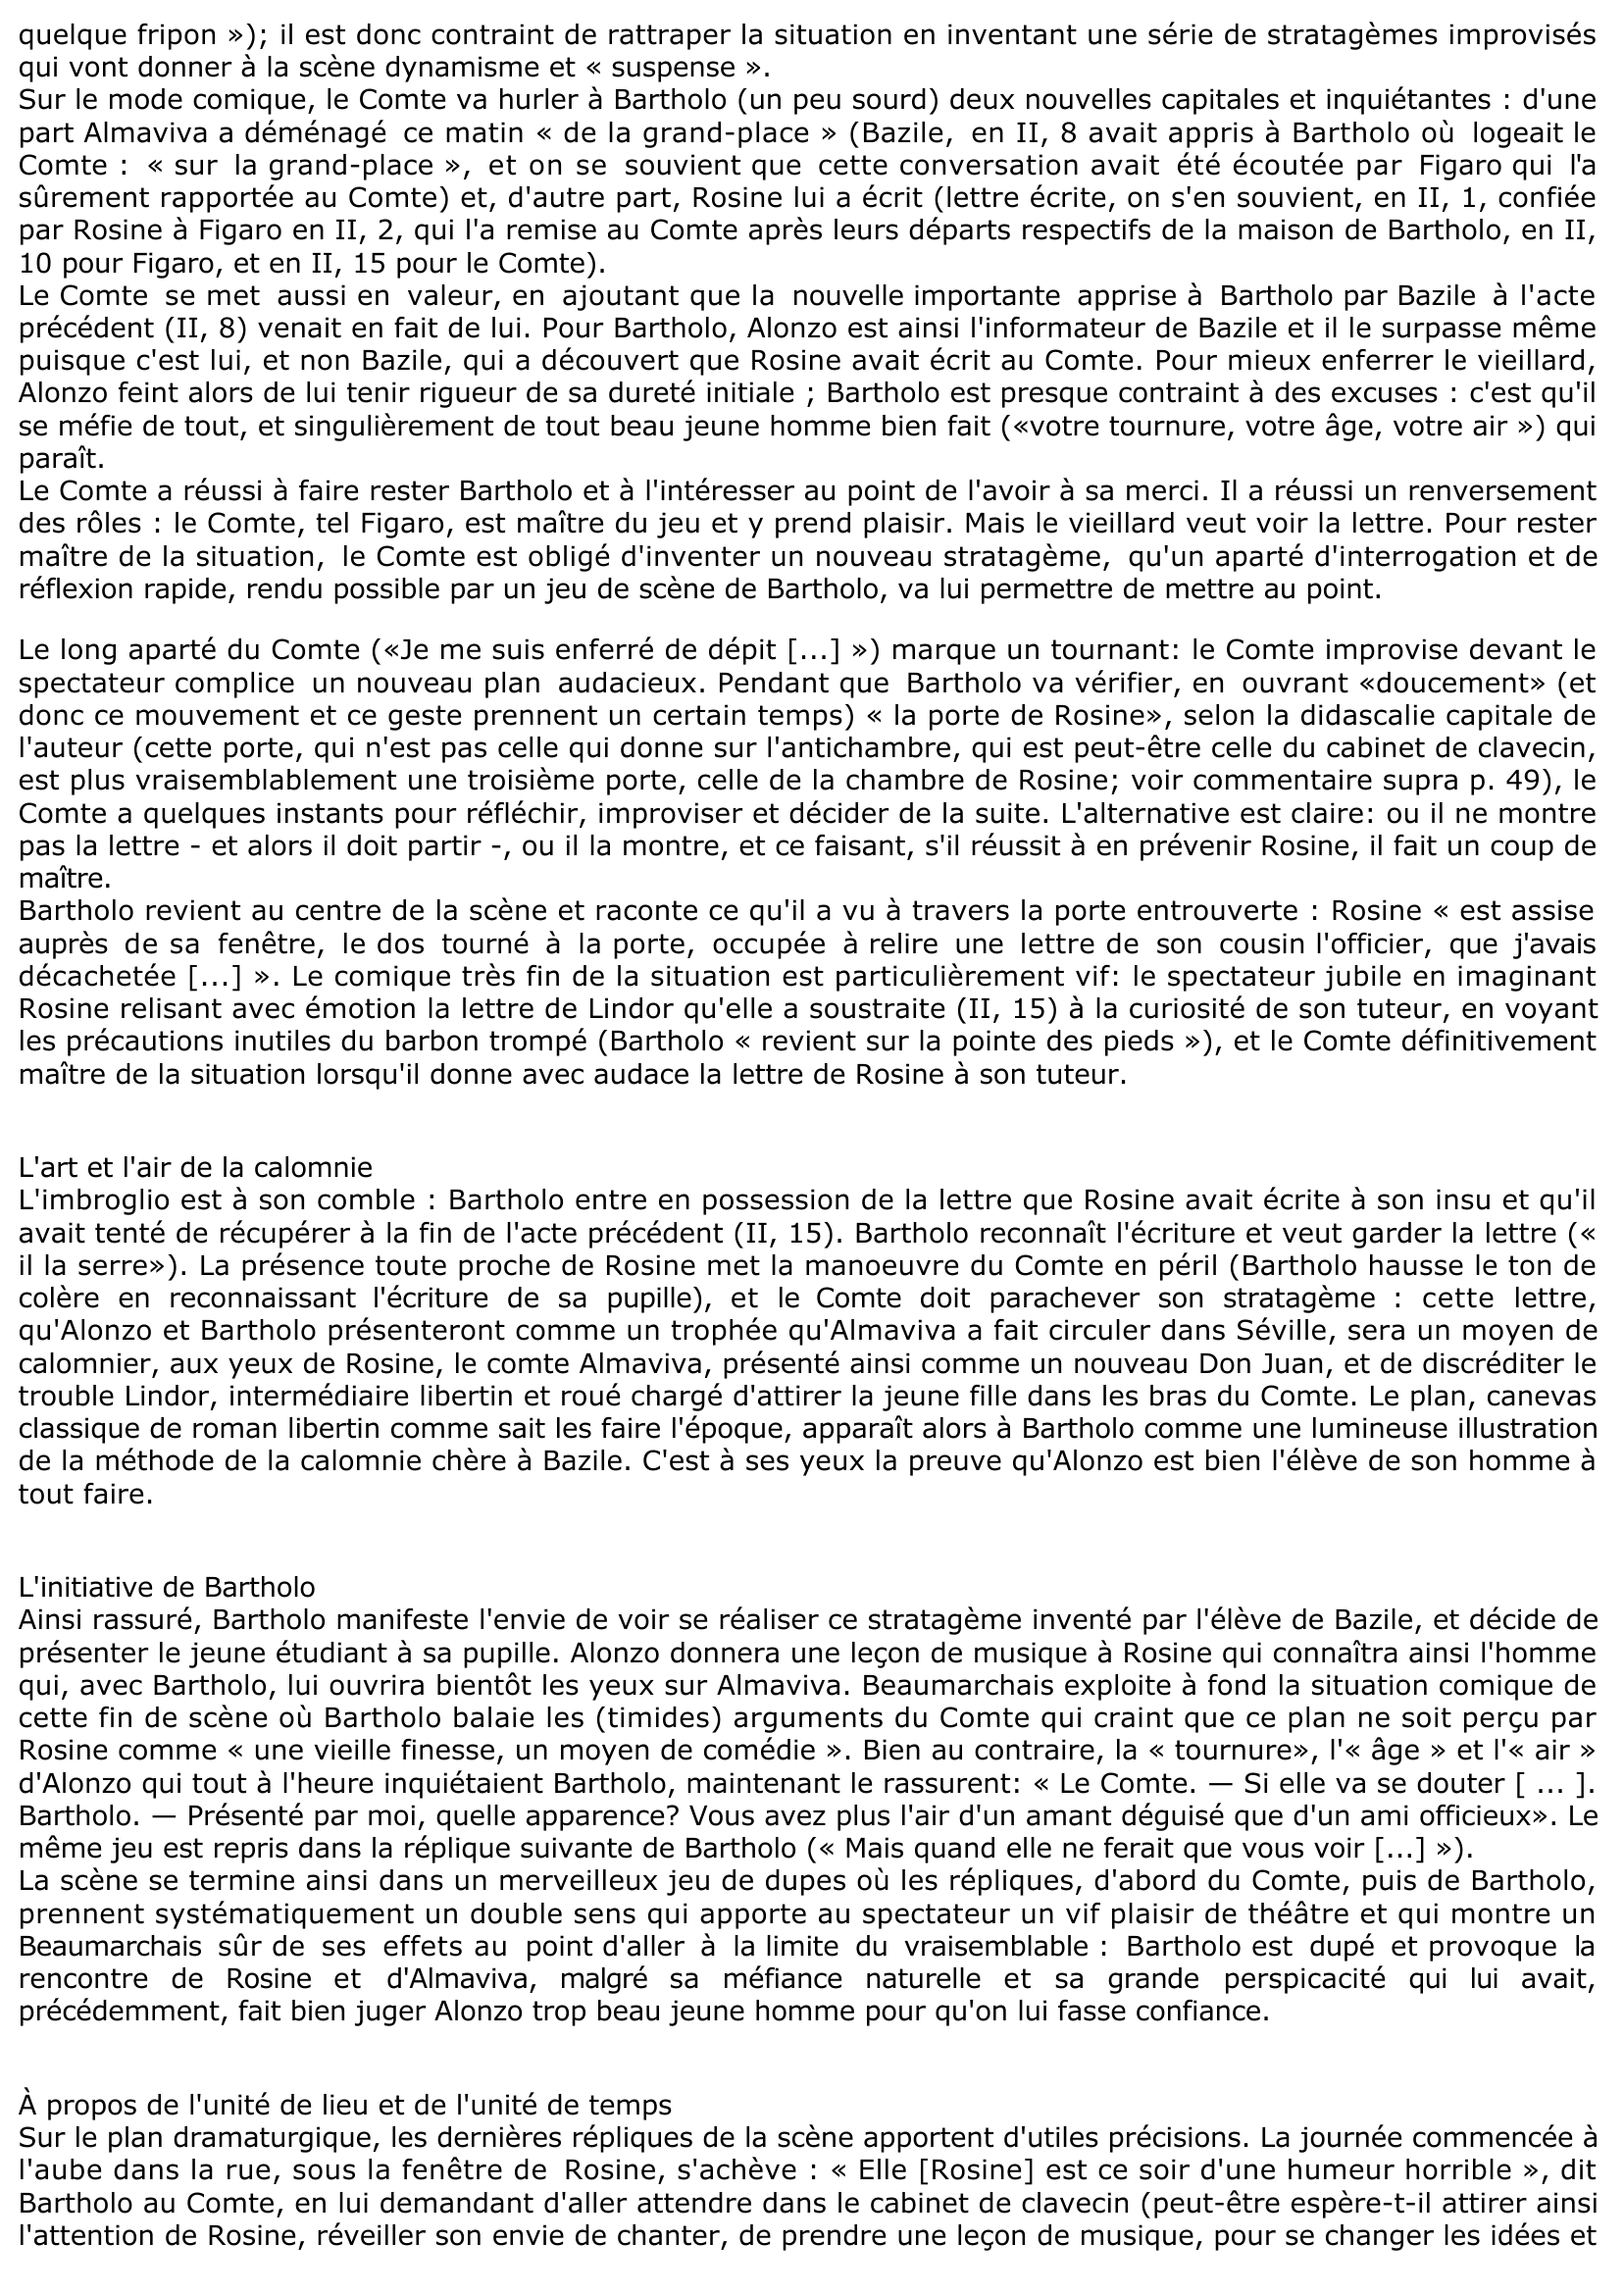 Prévisualisation du document ACTE III, SCÈNES 1-3 du "Barbier de Séville" de Beaumarchais (commentaire)